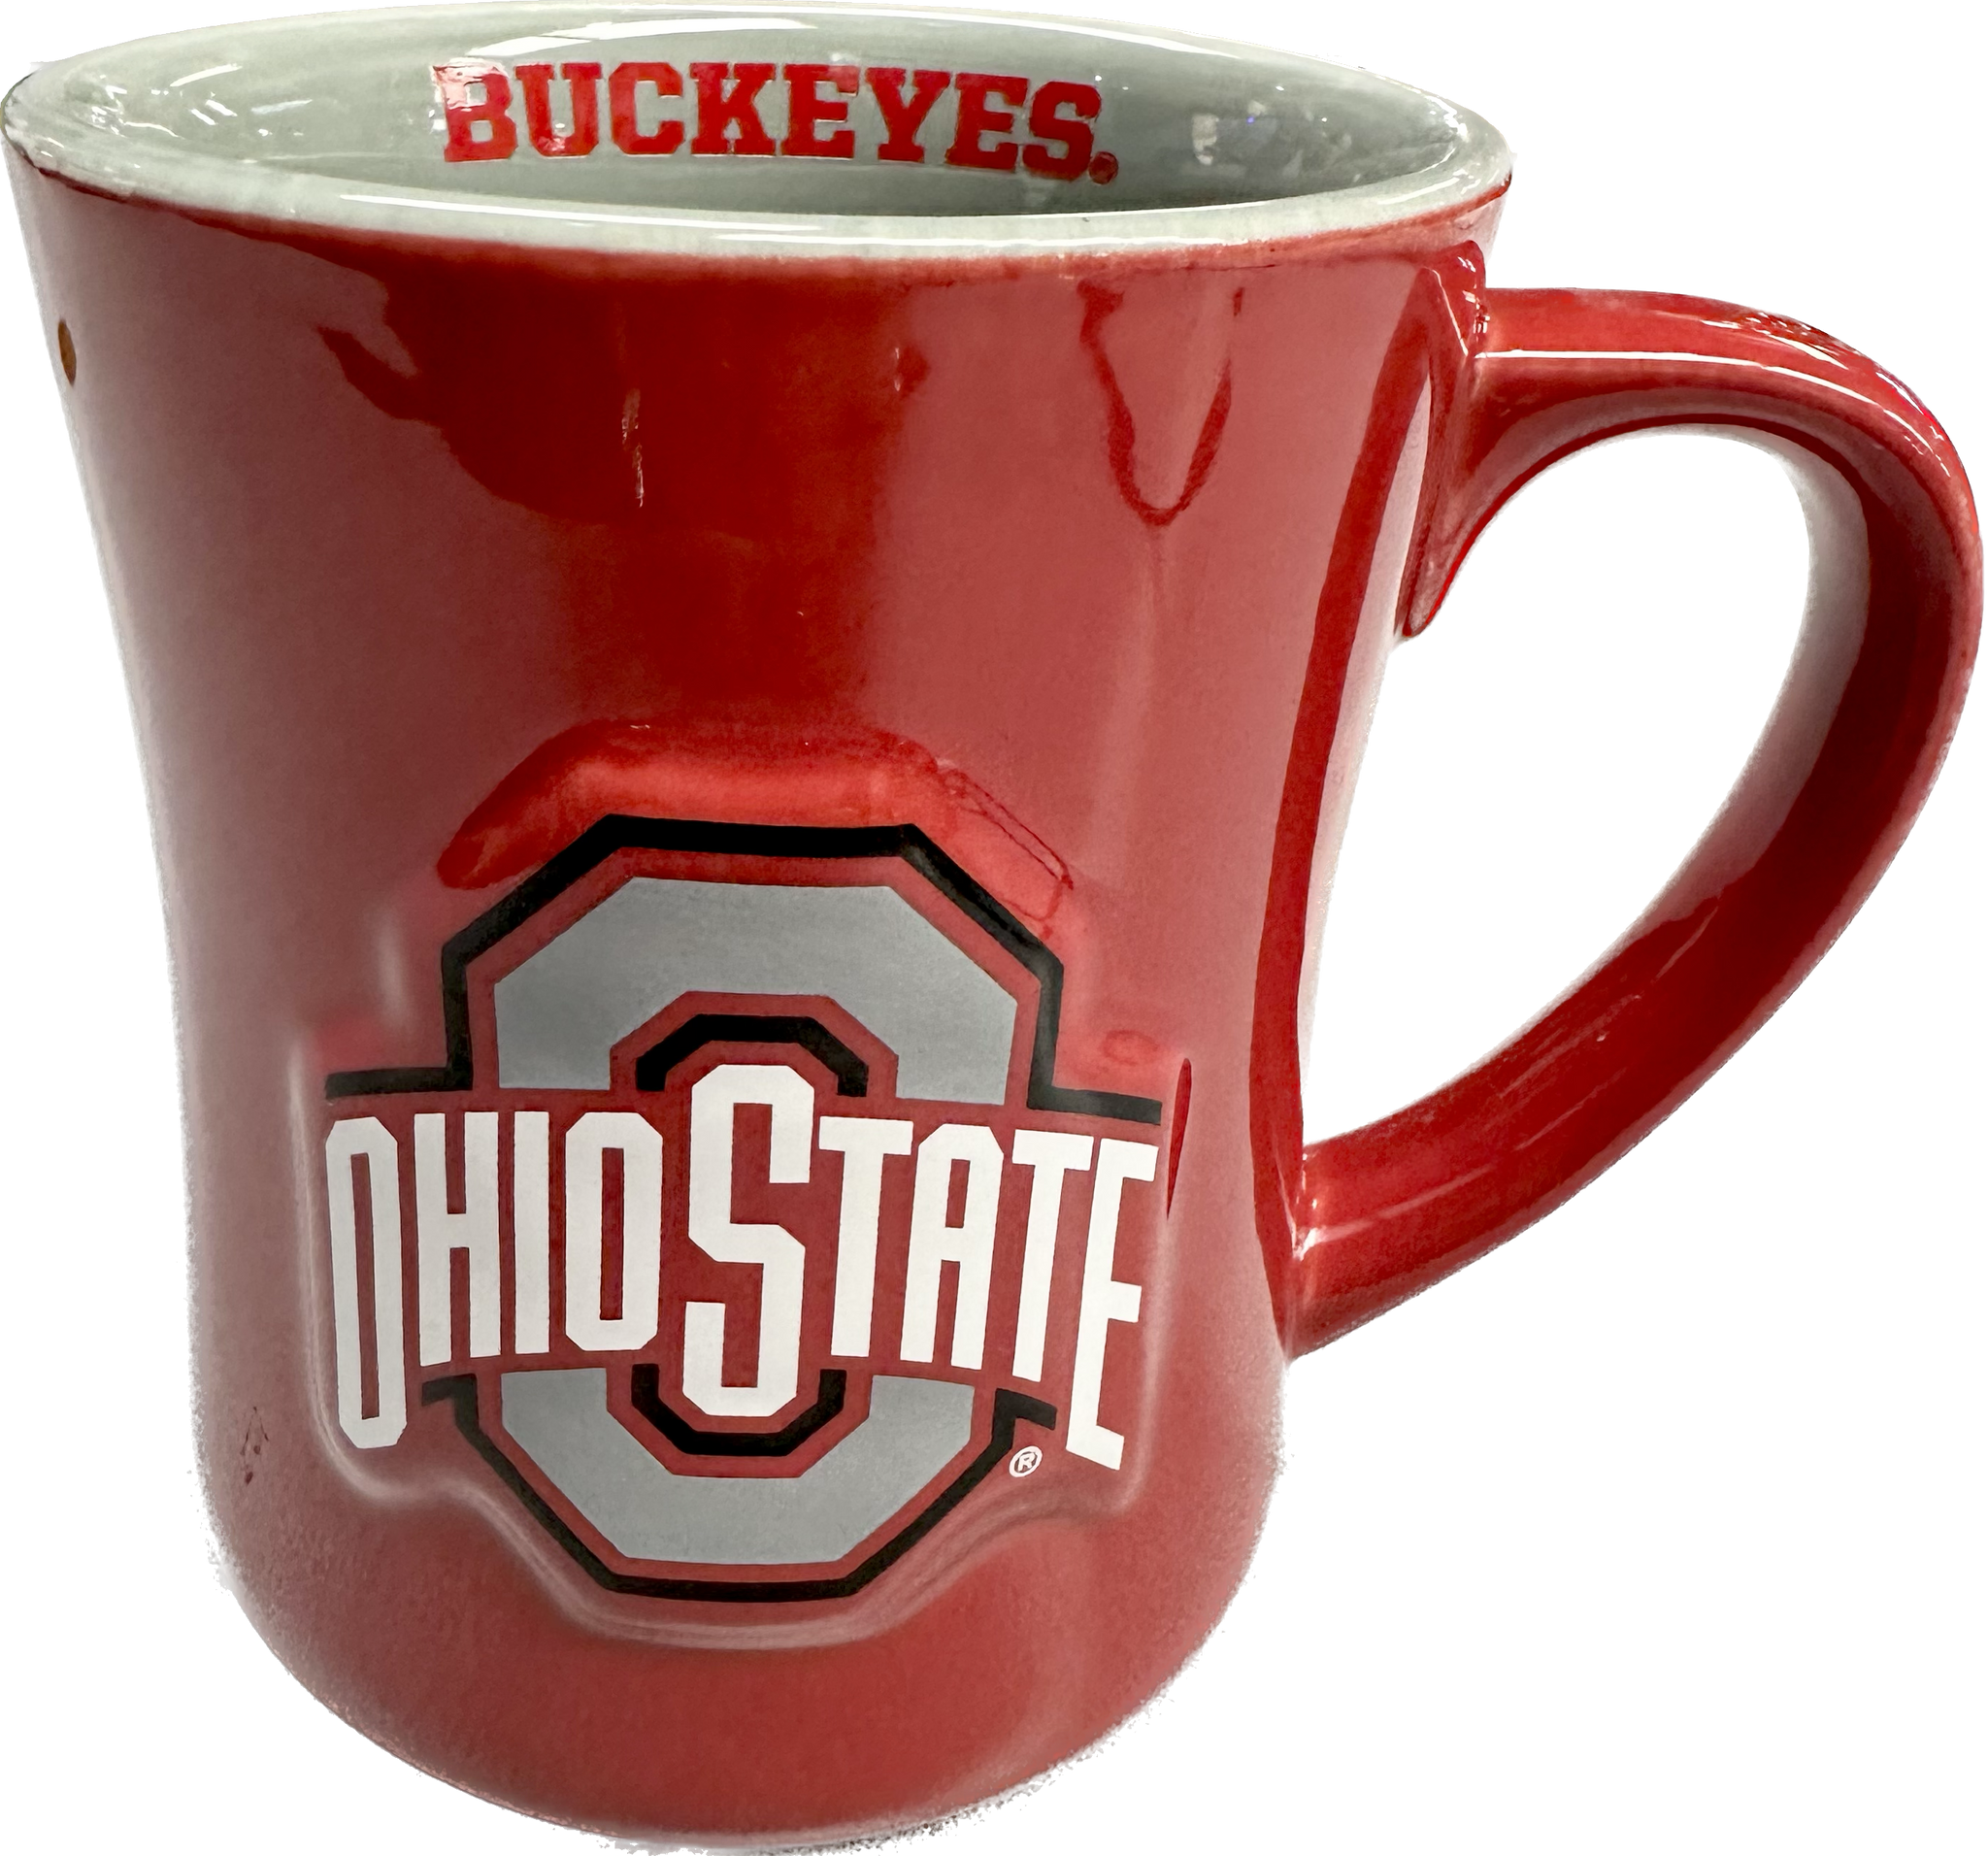 Ohio State Buckeyes Football Mug